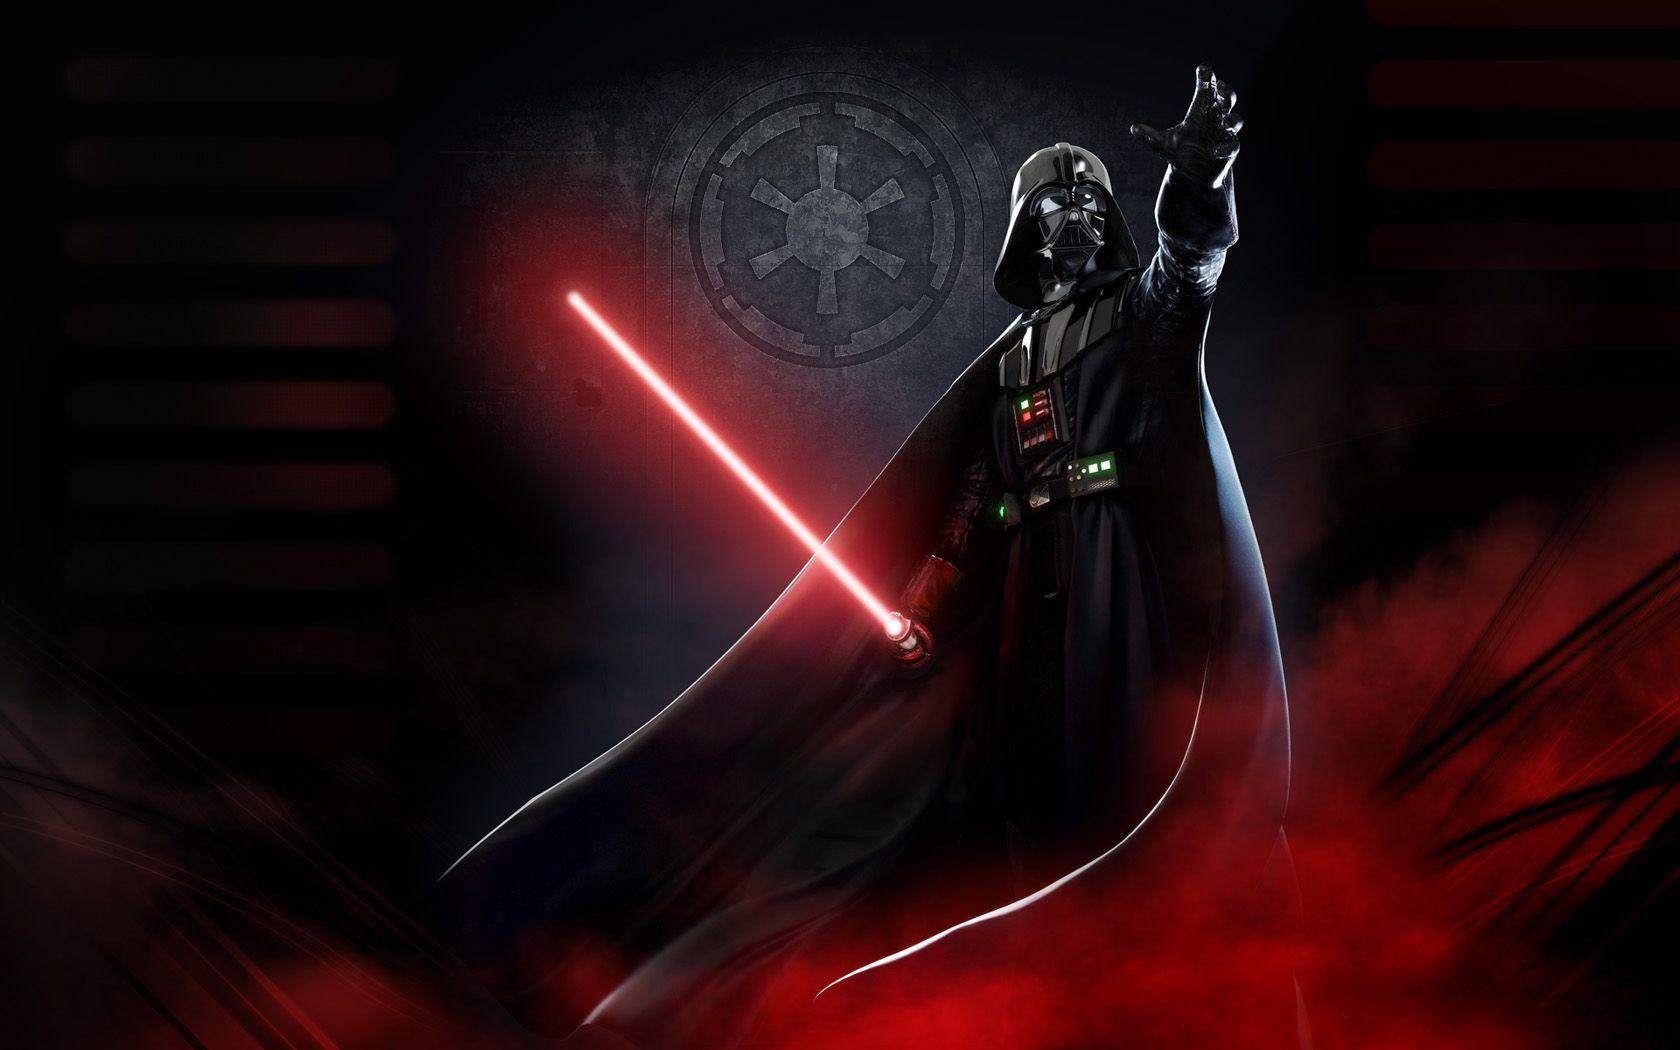 Light Star Wars lightsabers Darth Vader wallpaperx1050